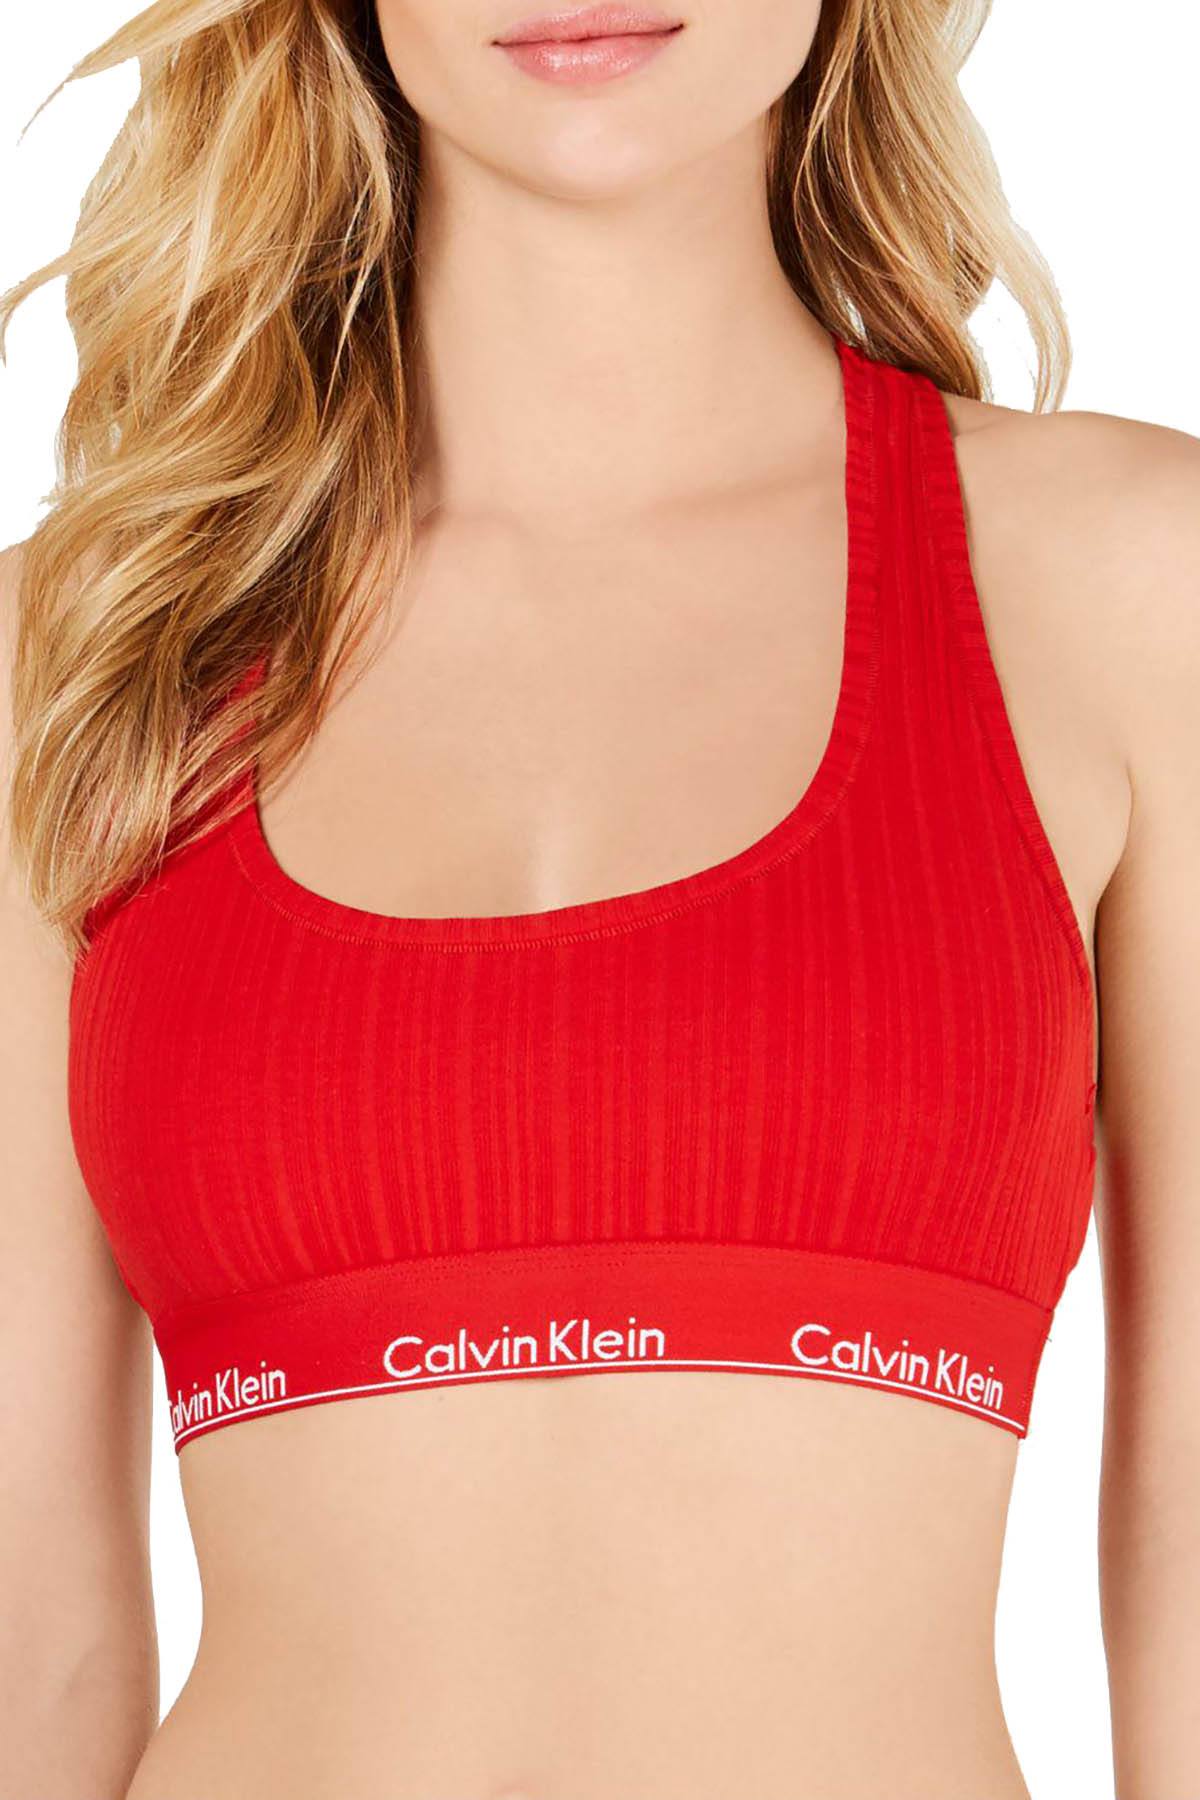 Calvin Klein Modern Cotton Rib Unlined Bralette in Red